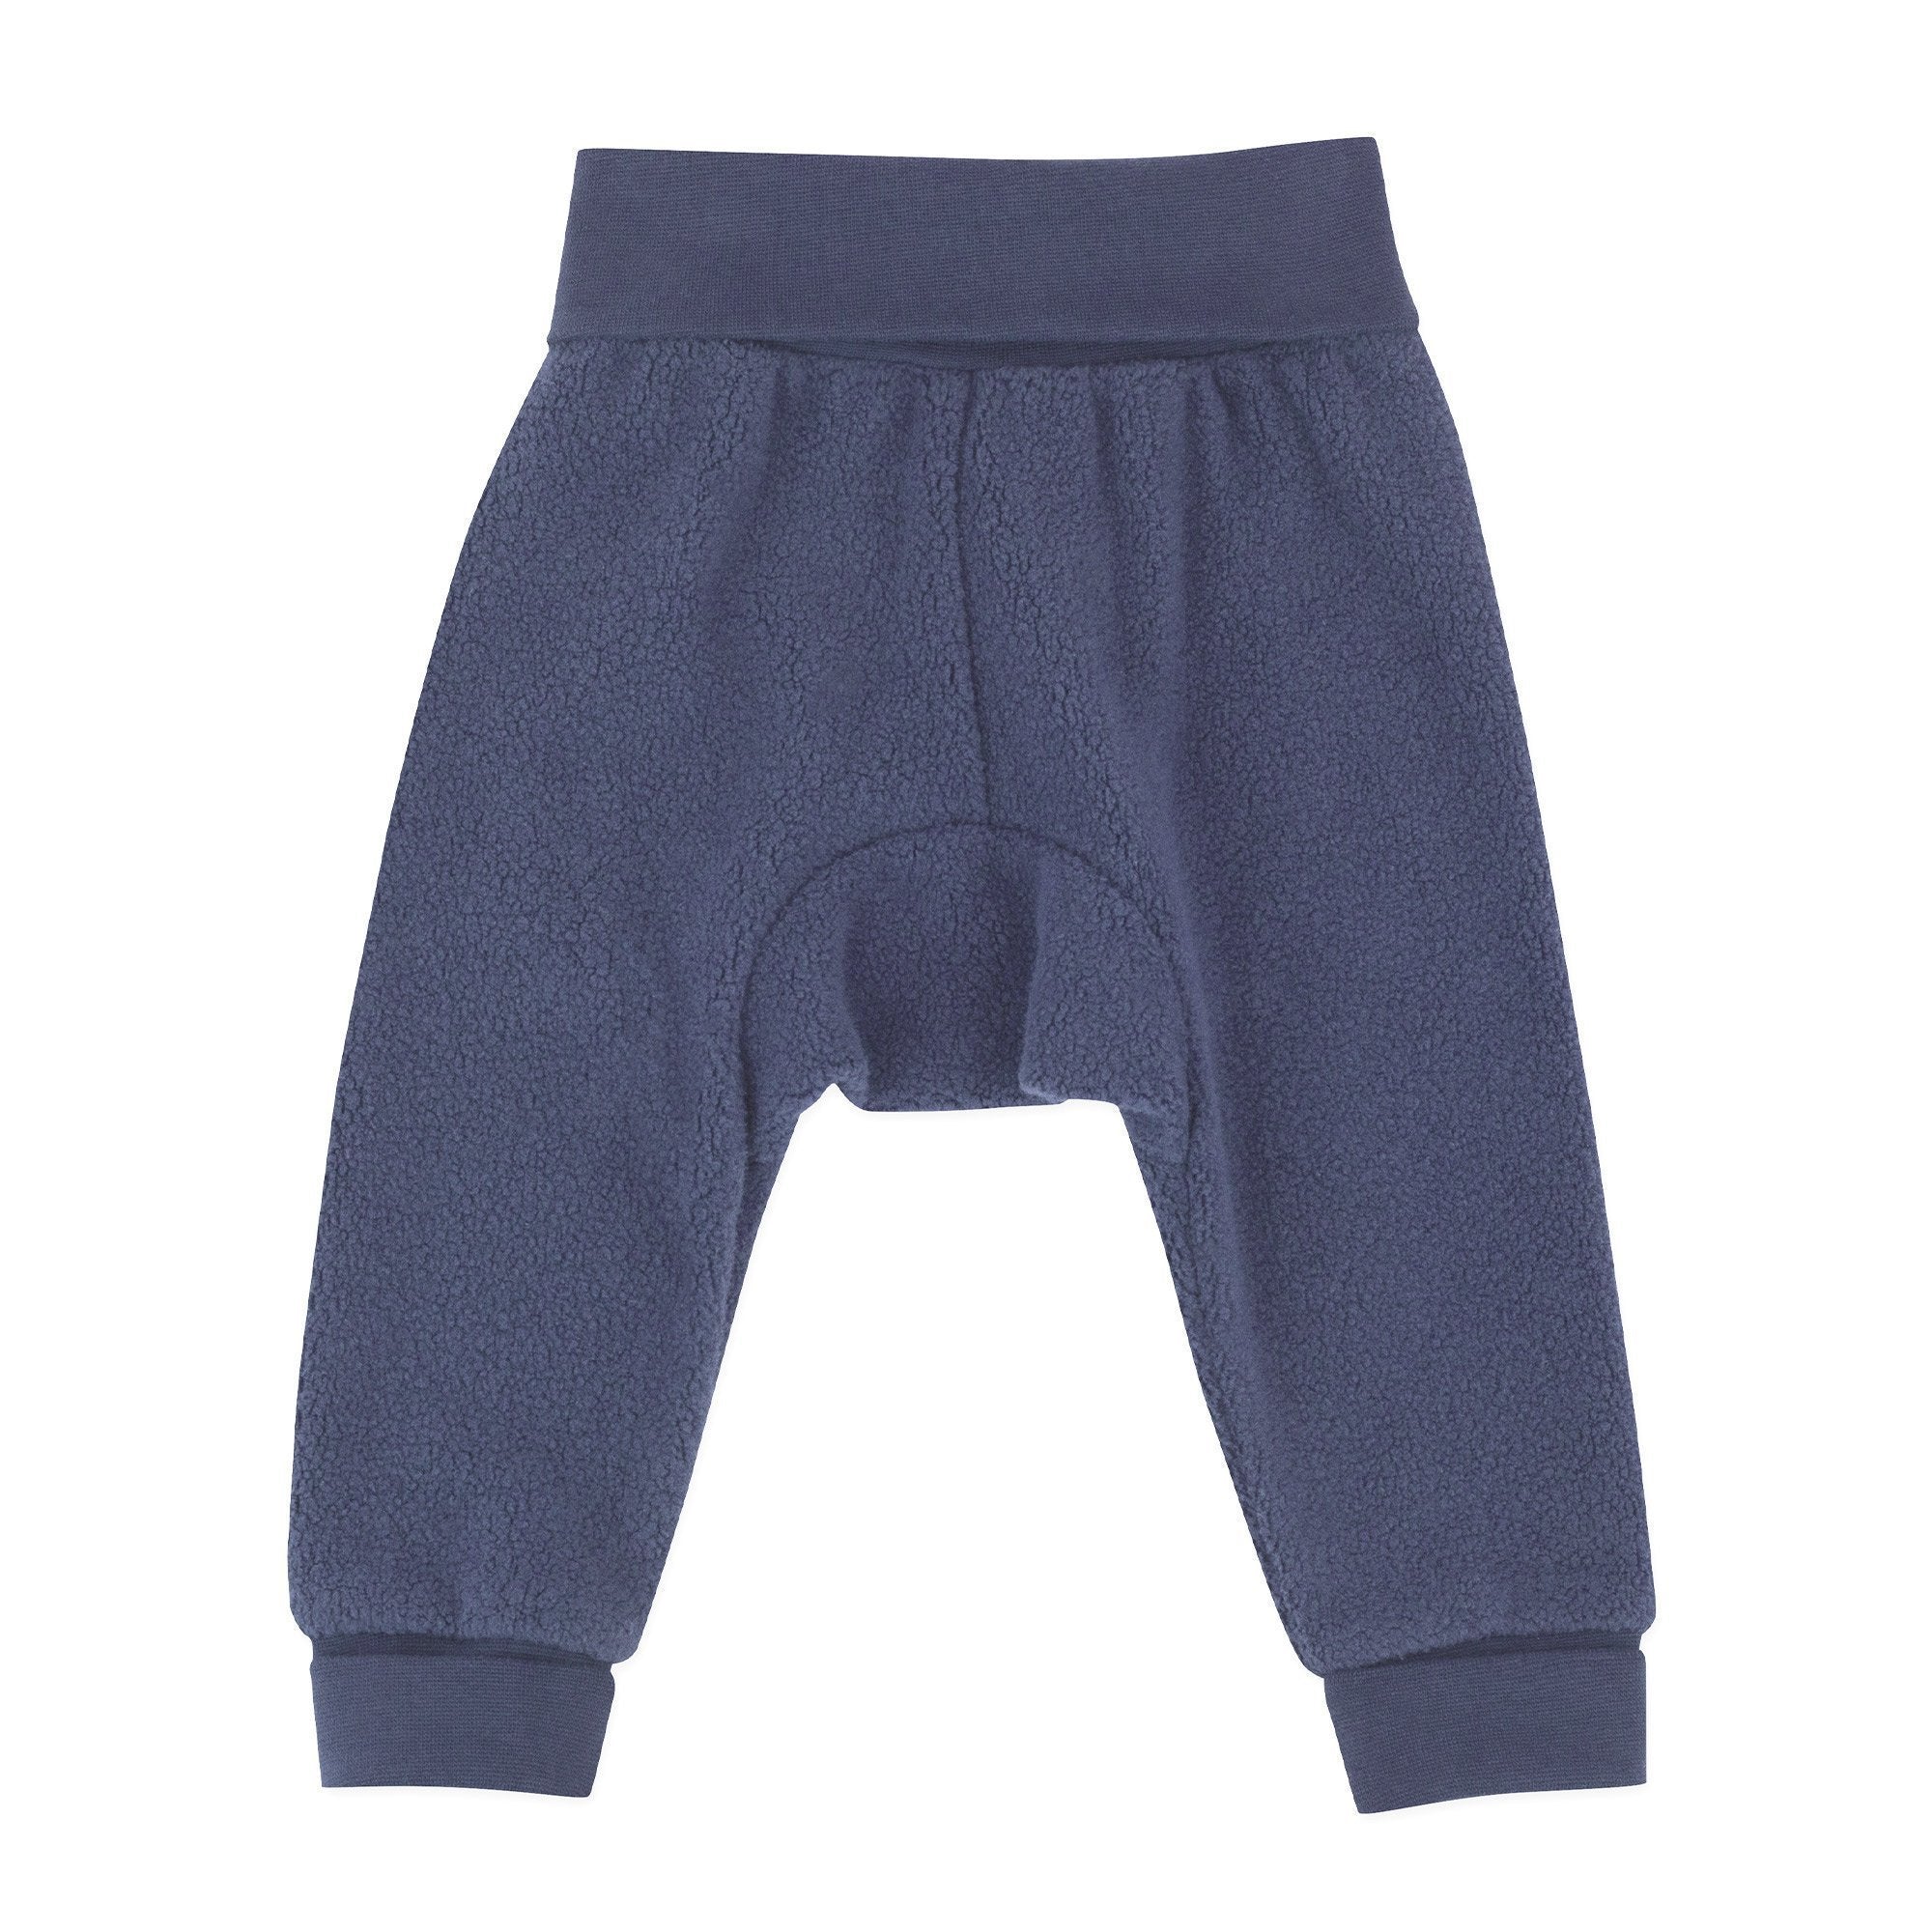 Men's Trust Navy Blue Size 40/32 Casual Dress Pants w/Bottom Cuff | eBay